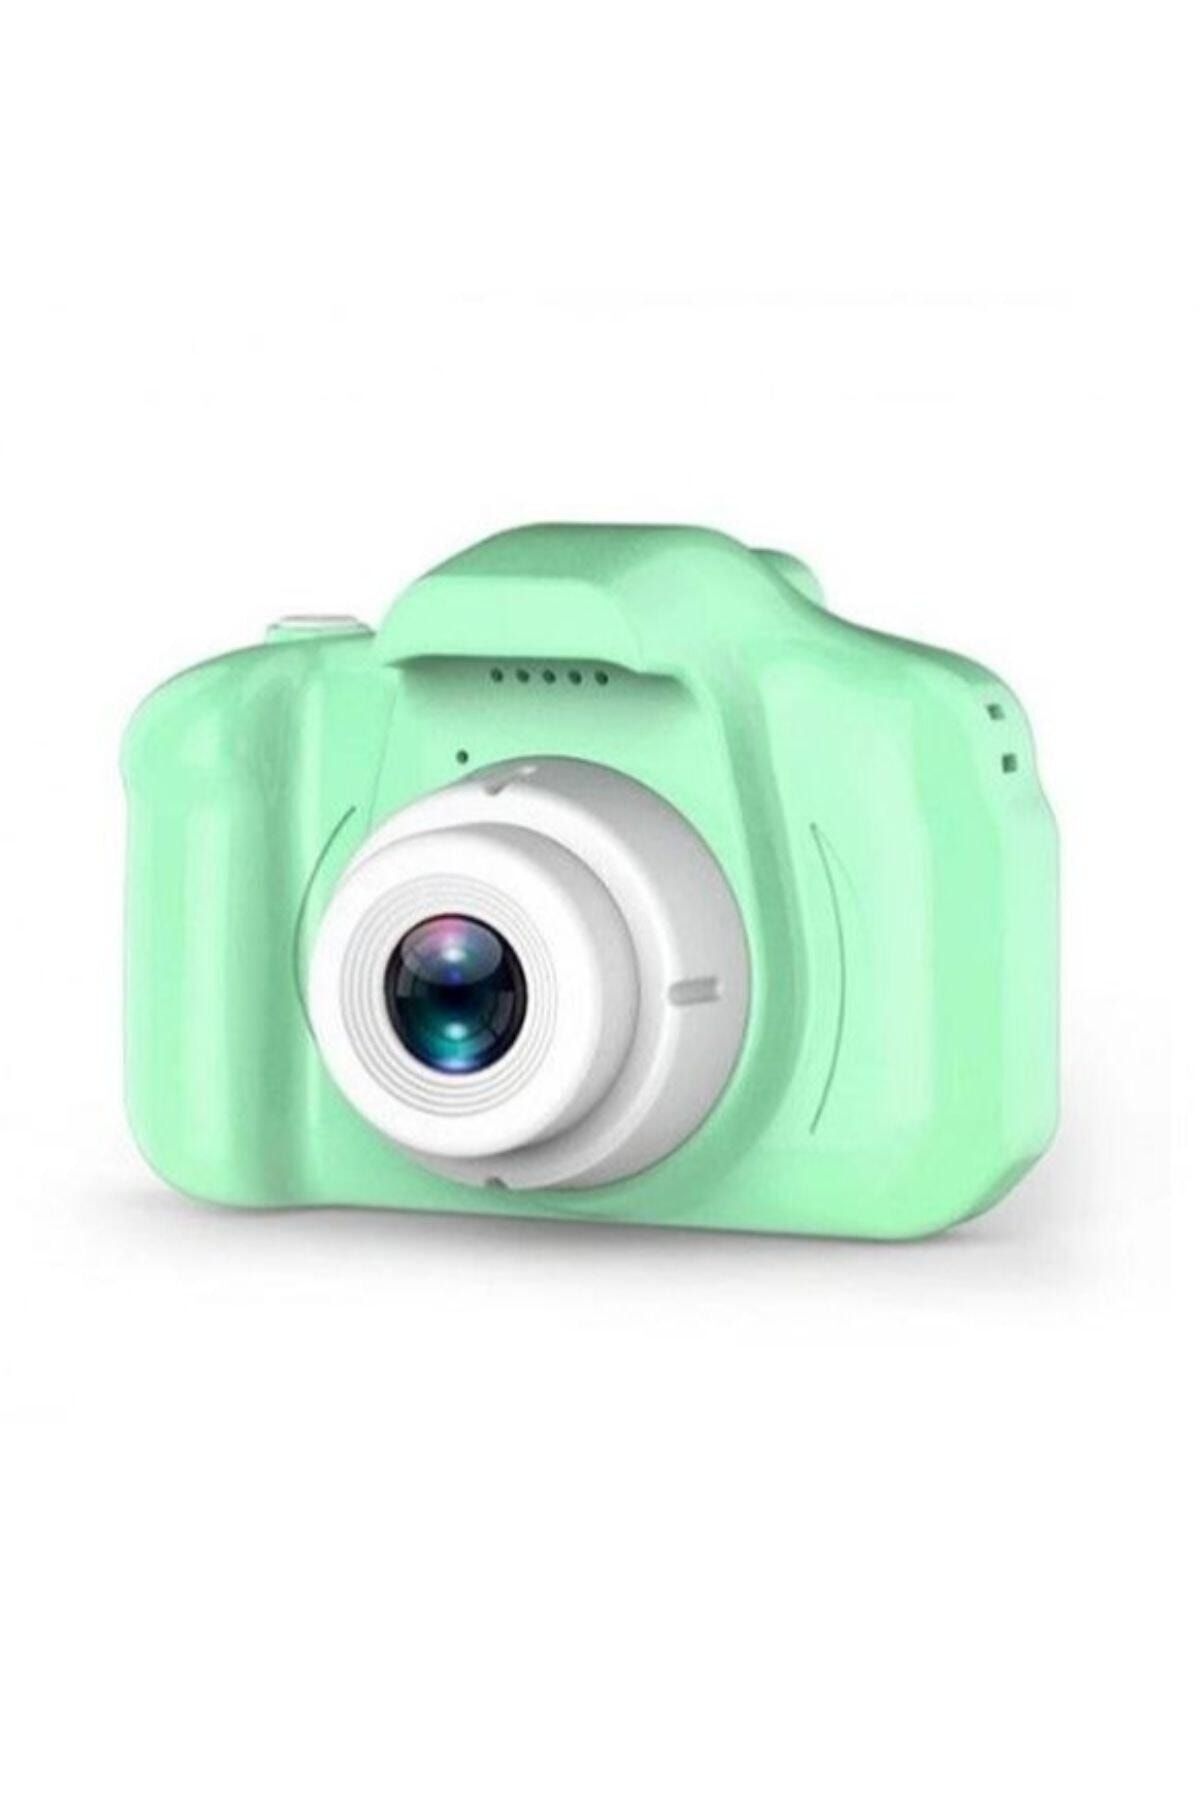 BLUE İNTER Mini 1080p Hd Kamera Çocuklar Için Dijital Fotoğraf Makinesi Cmr9